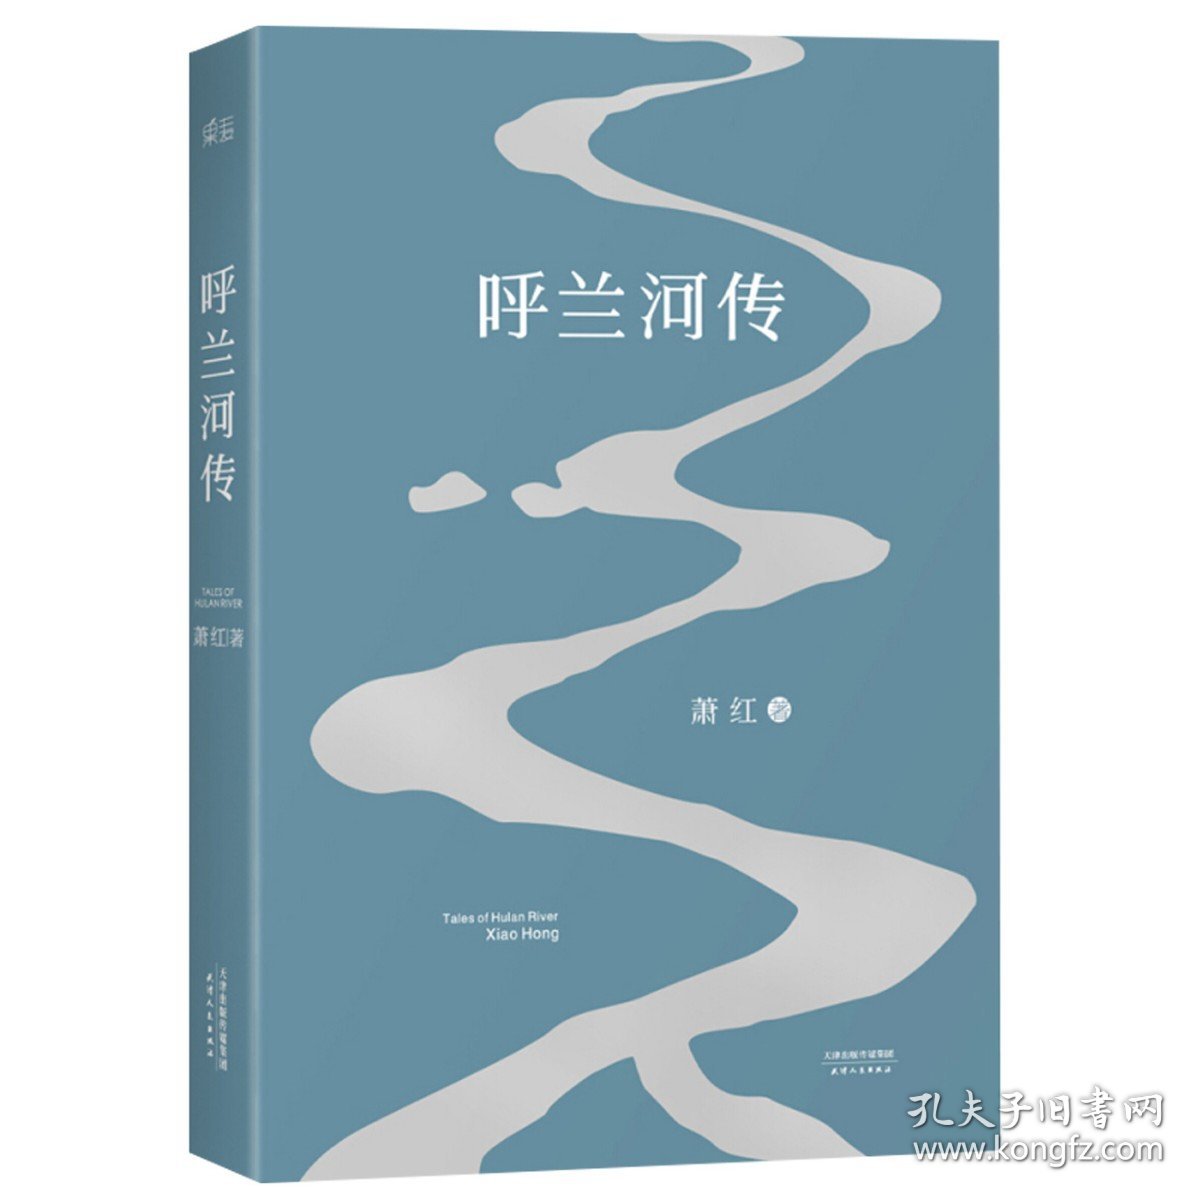 呼兰河传 1940年初刊还原版 萧红著 天津人民出版社 书籍